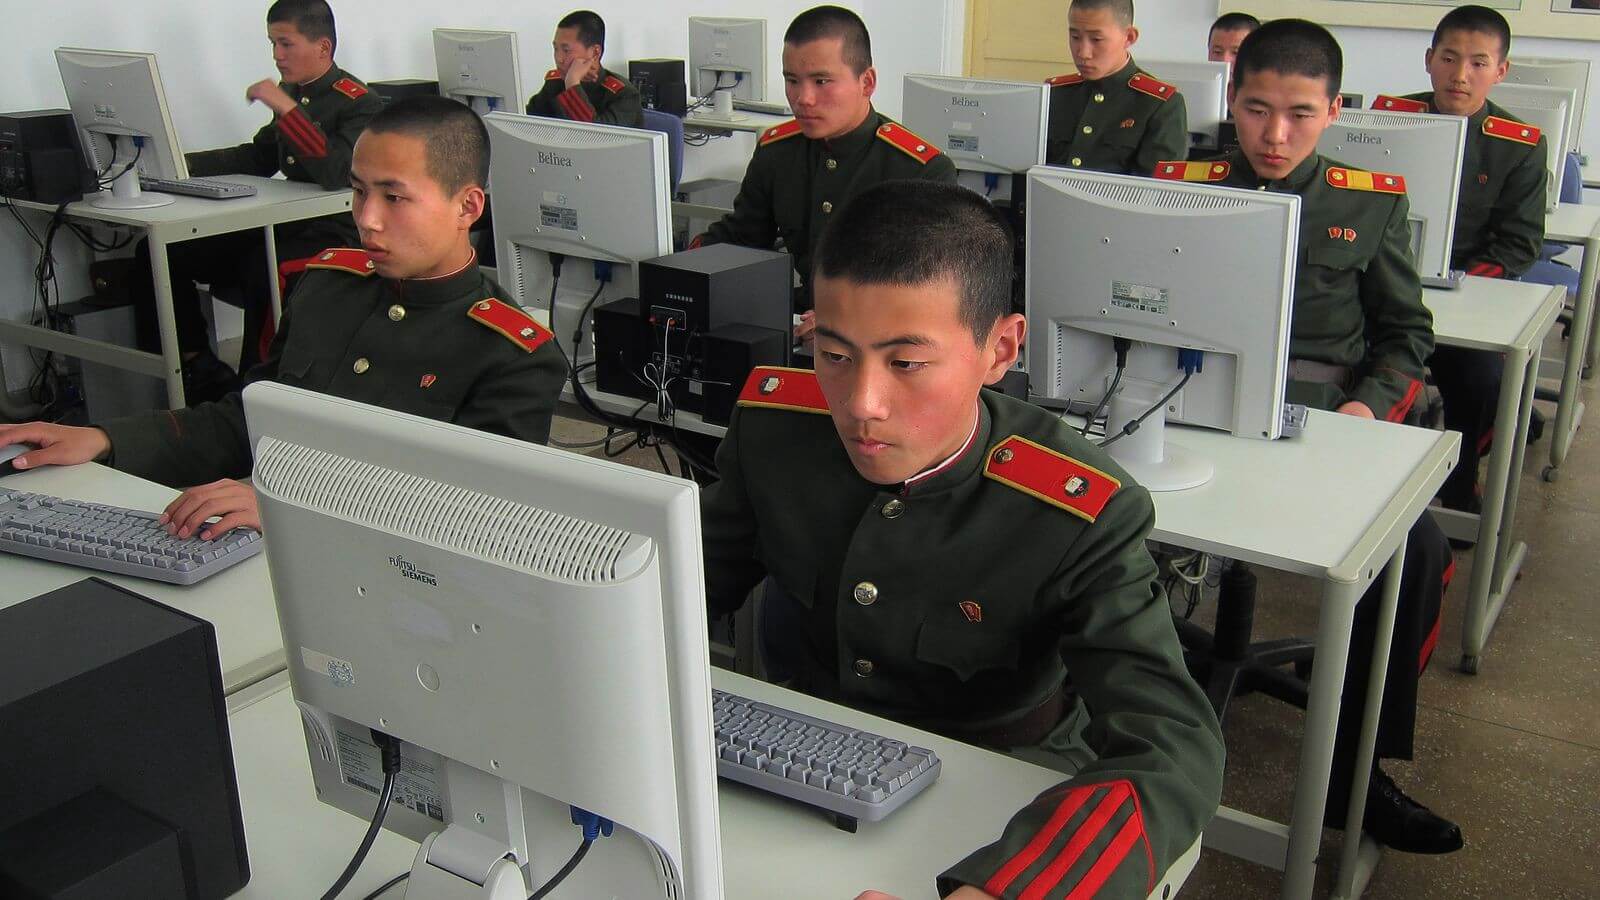 Где хранить свои криптовалюты? Северная Корея уделяет много внимания подготовке специалистов в кибербезопасности. Фото.